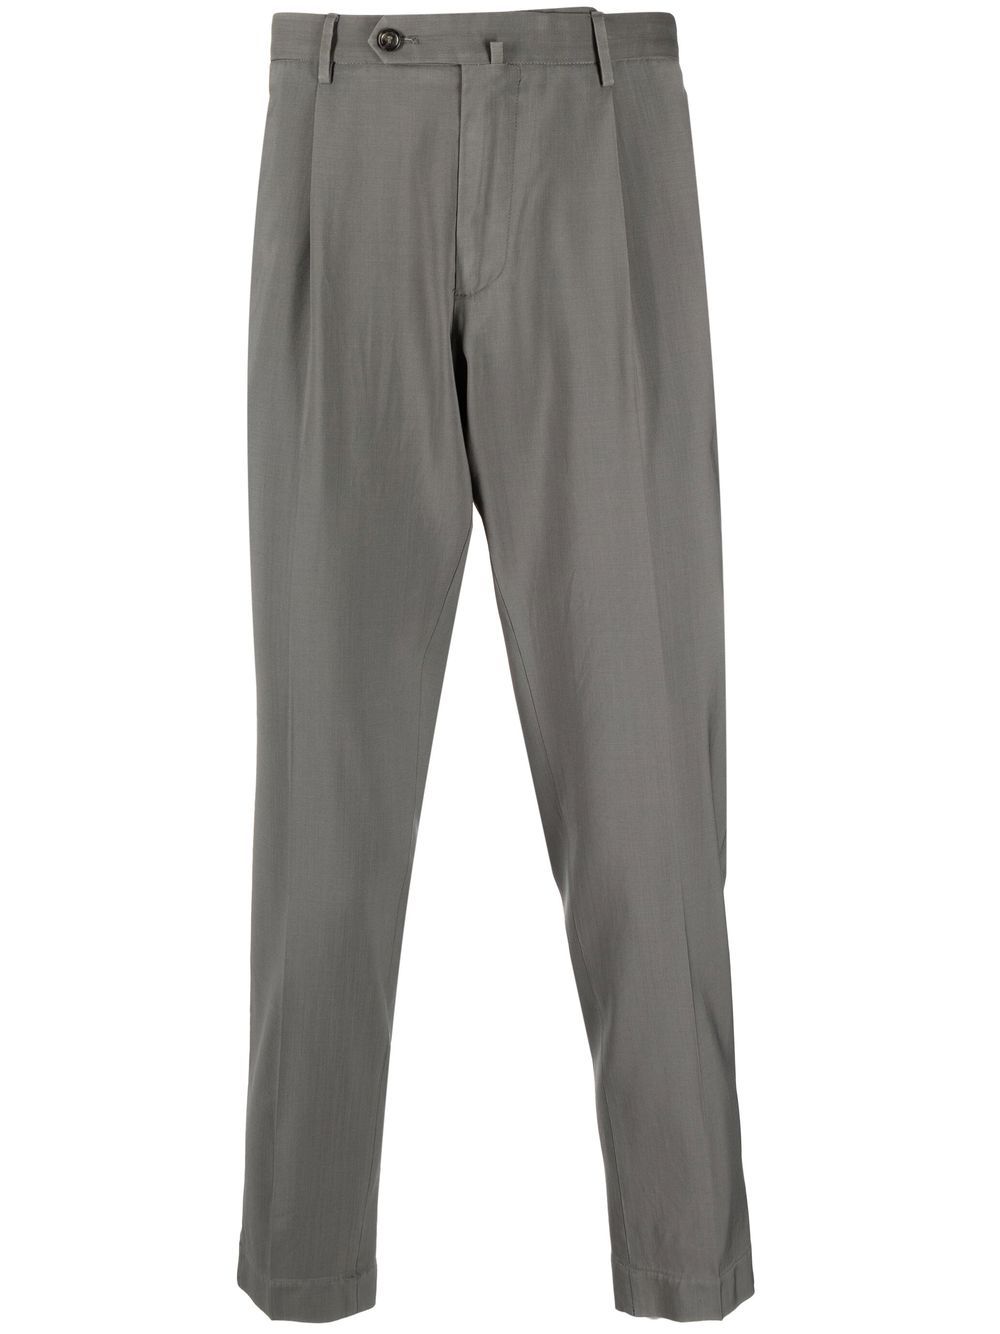 Dell'oglio off-centre button waistband trousers - Grey